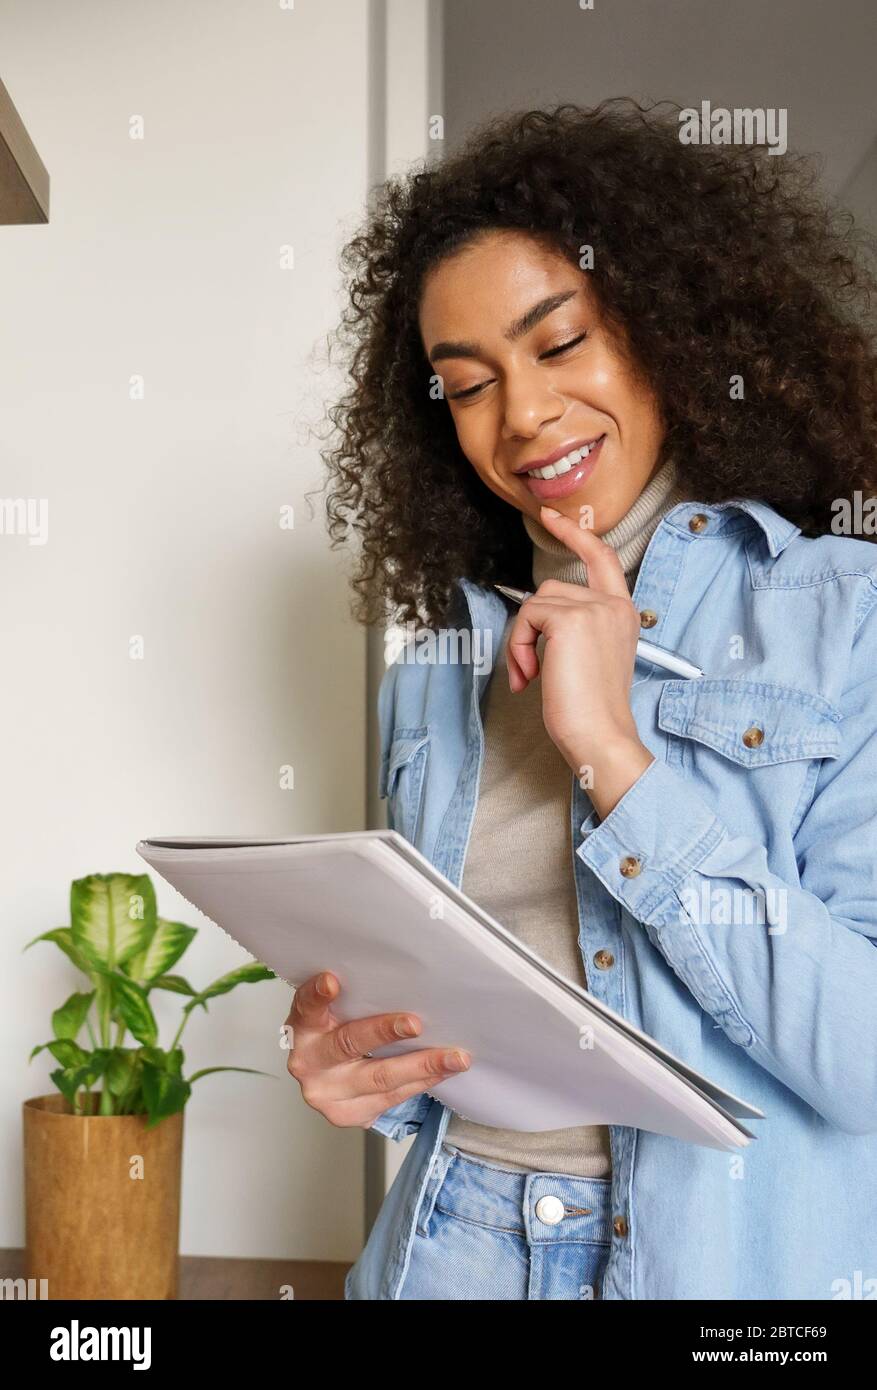 Lächelnd afrikanischen Teenager-Mädchen Studie von zu Hause denken auf kreative Idee halten Notebook. Stockfoto